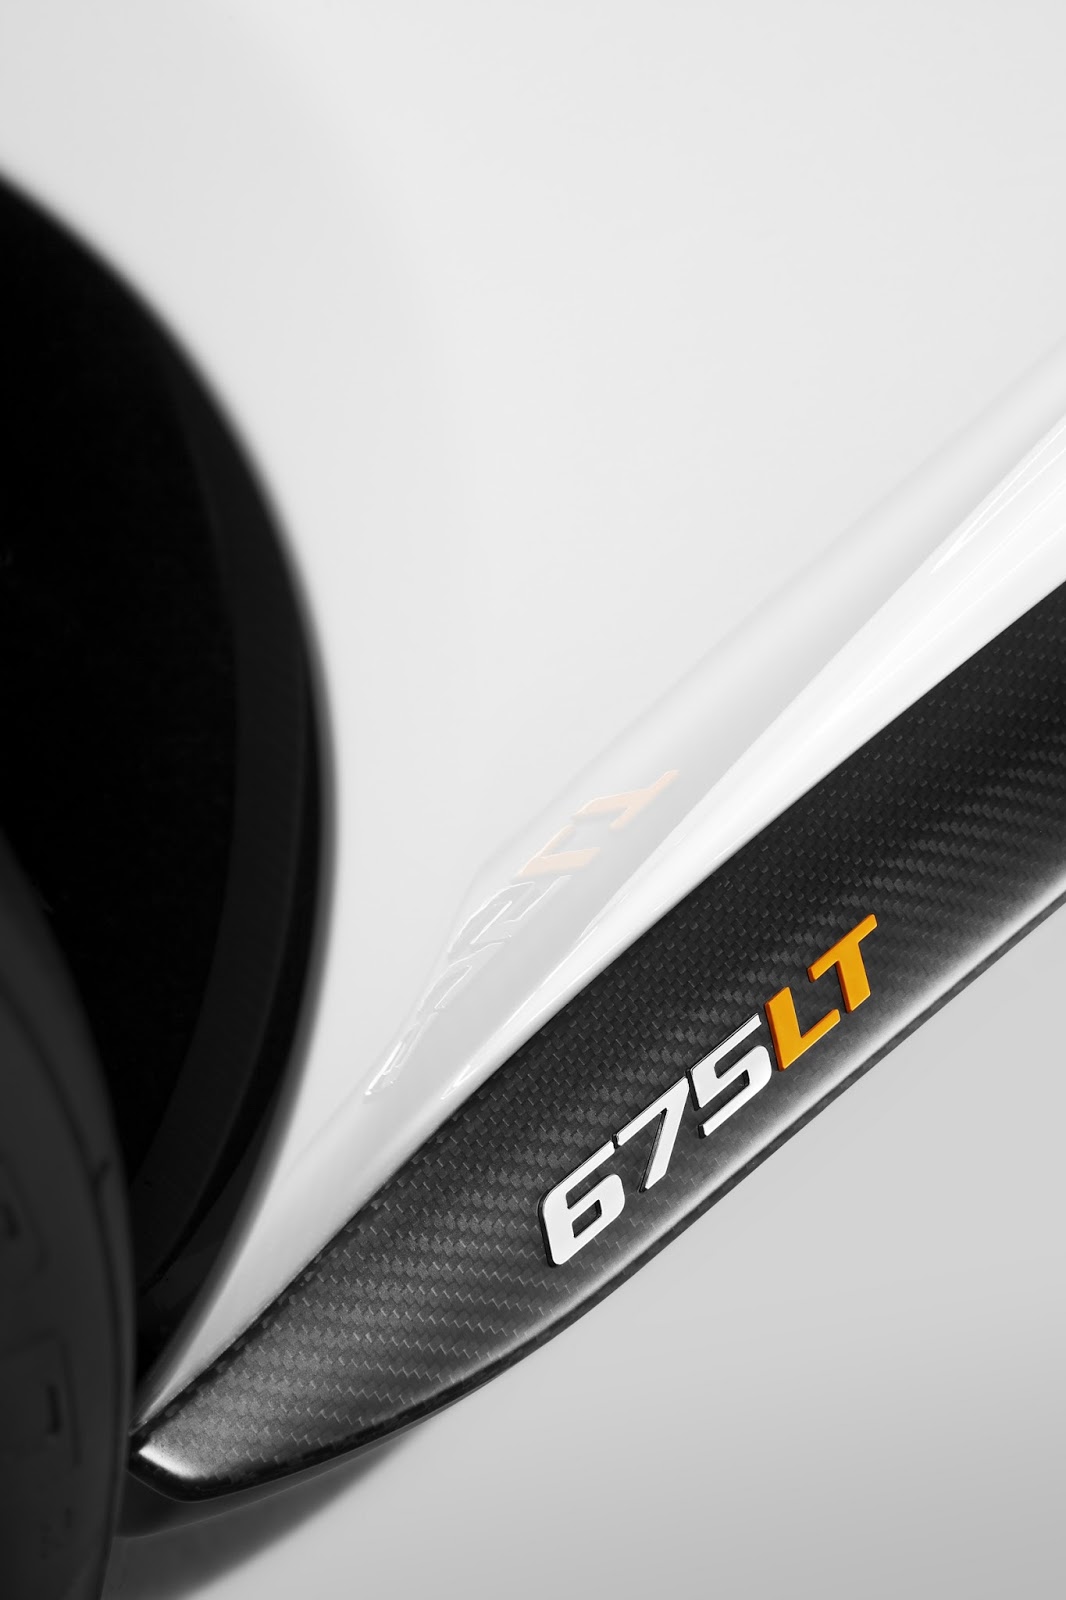  McLaren 675LT (2015)